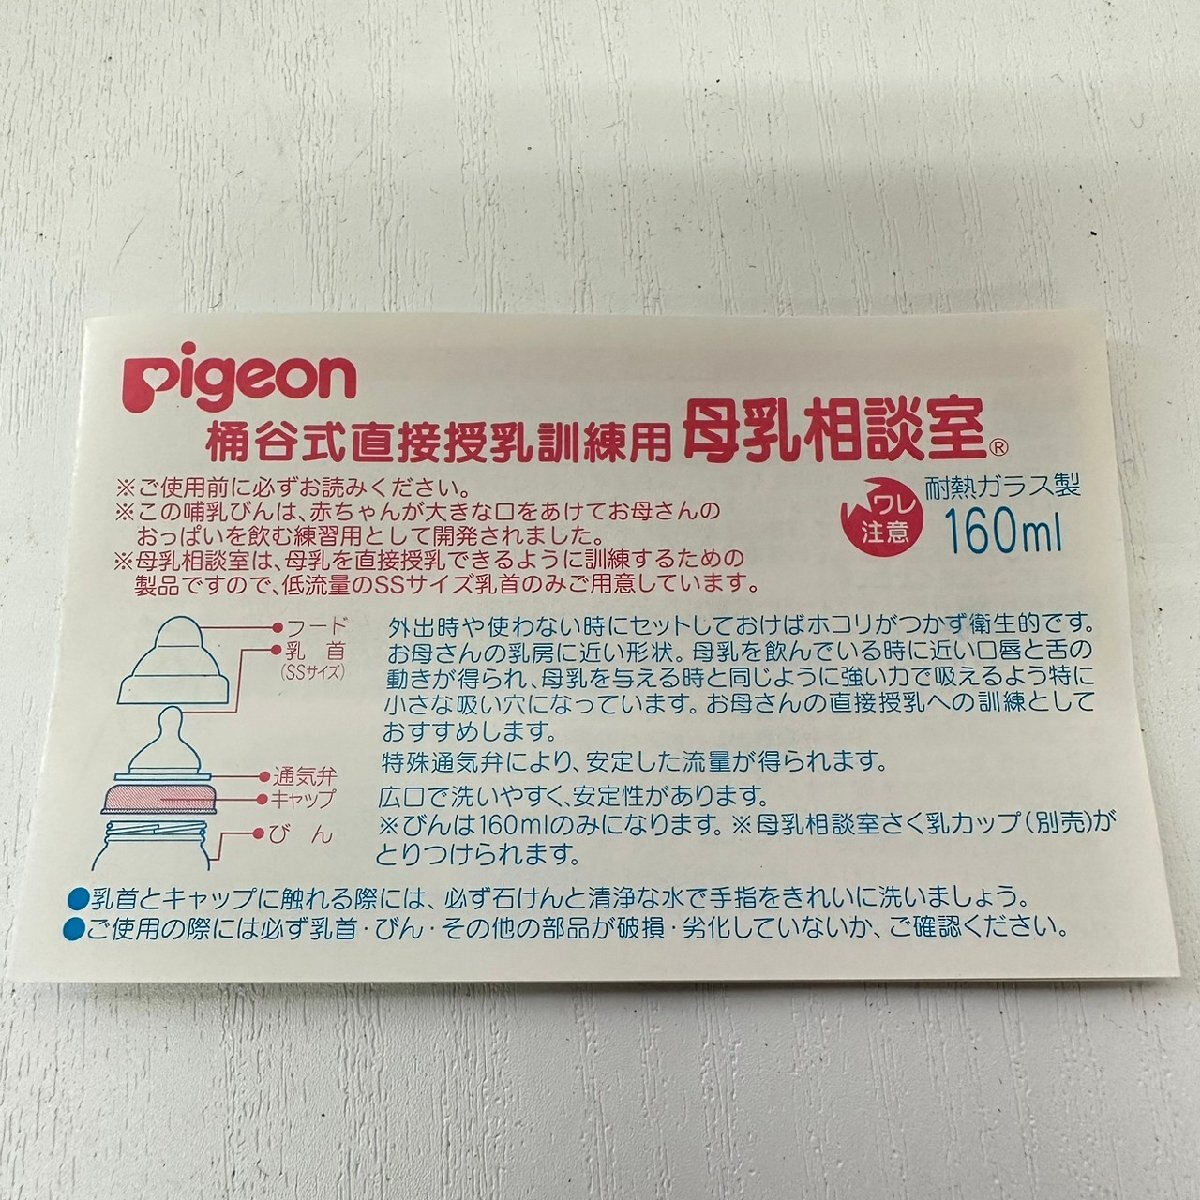  Pigeon материнское молоко консультации . грудное вскармливание бутылка 160ml 5238